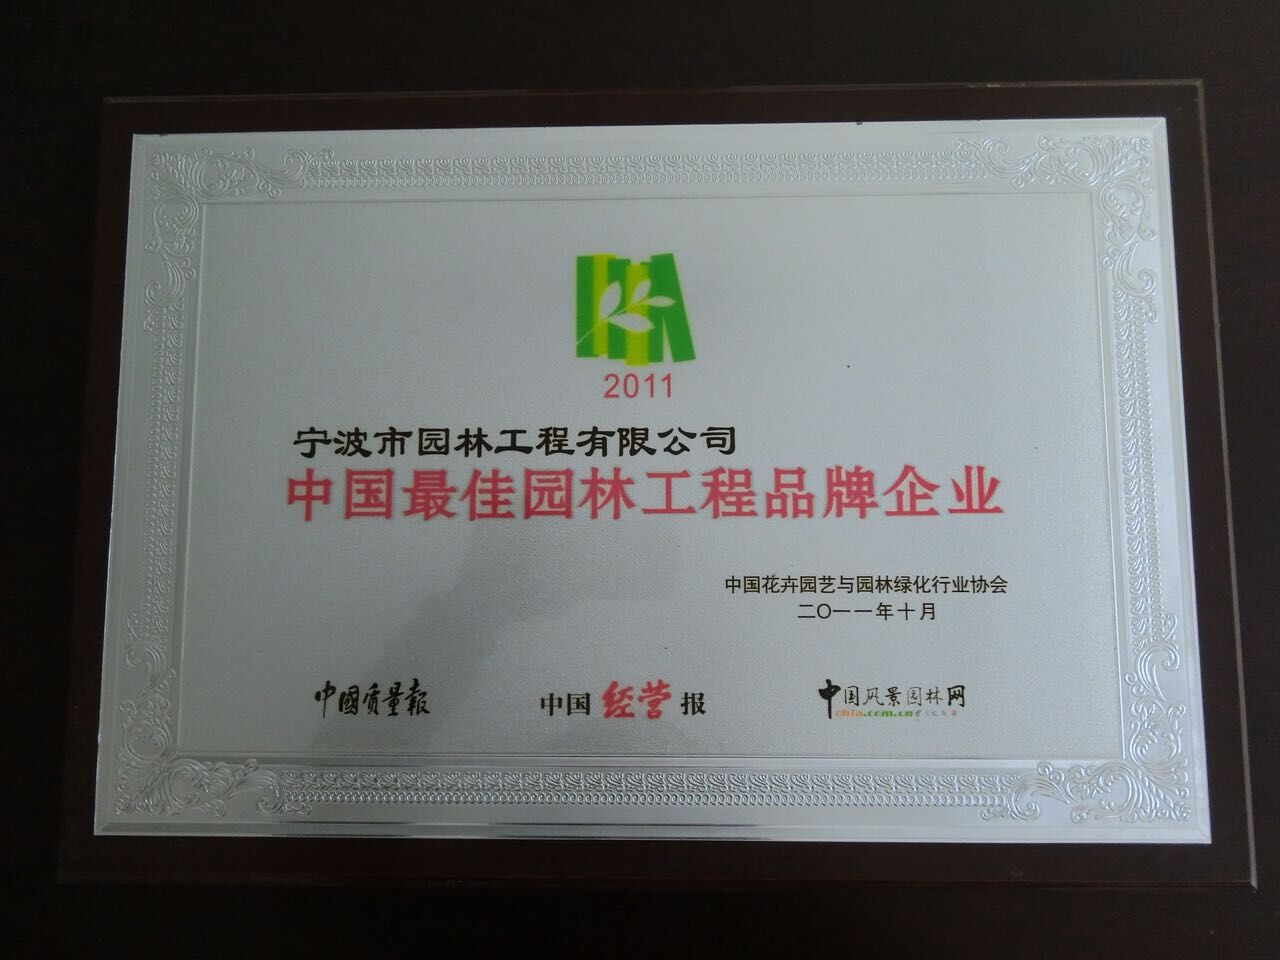 中國最佳園林工程品牌企業